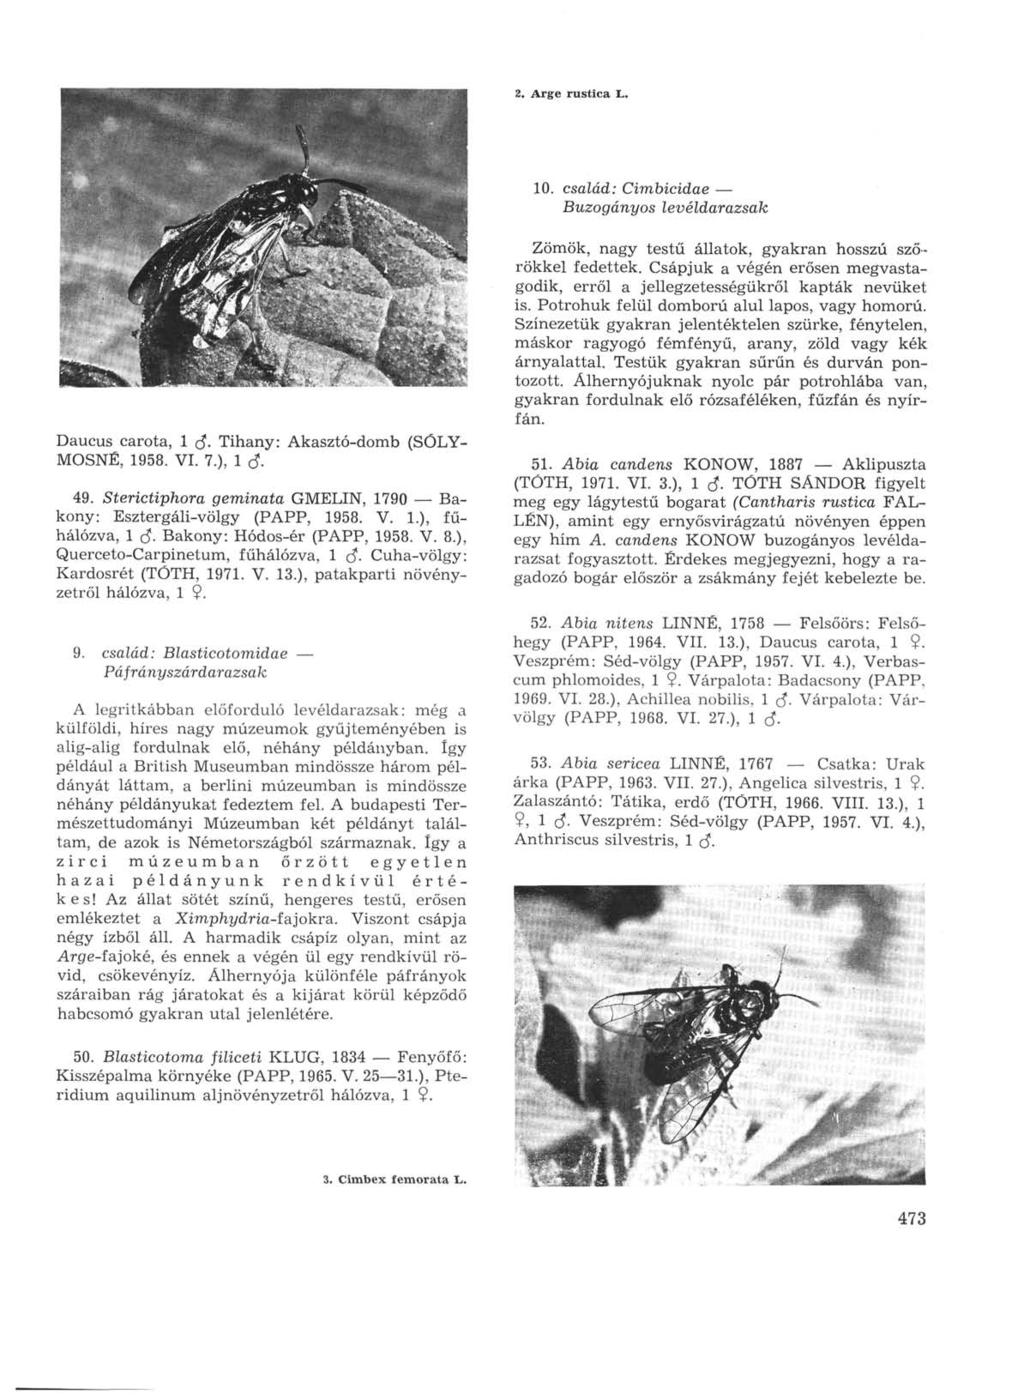 2. Arge rustica L. 10. család: Cimbicidae Buzogányos levéldarazsak Daucus carota, 1 rf. Tihany: Akasztó-domb (SÓLY- MOSNÉ, 1958. VI. 7.), 1 в- 49.